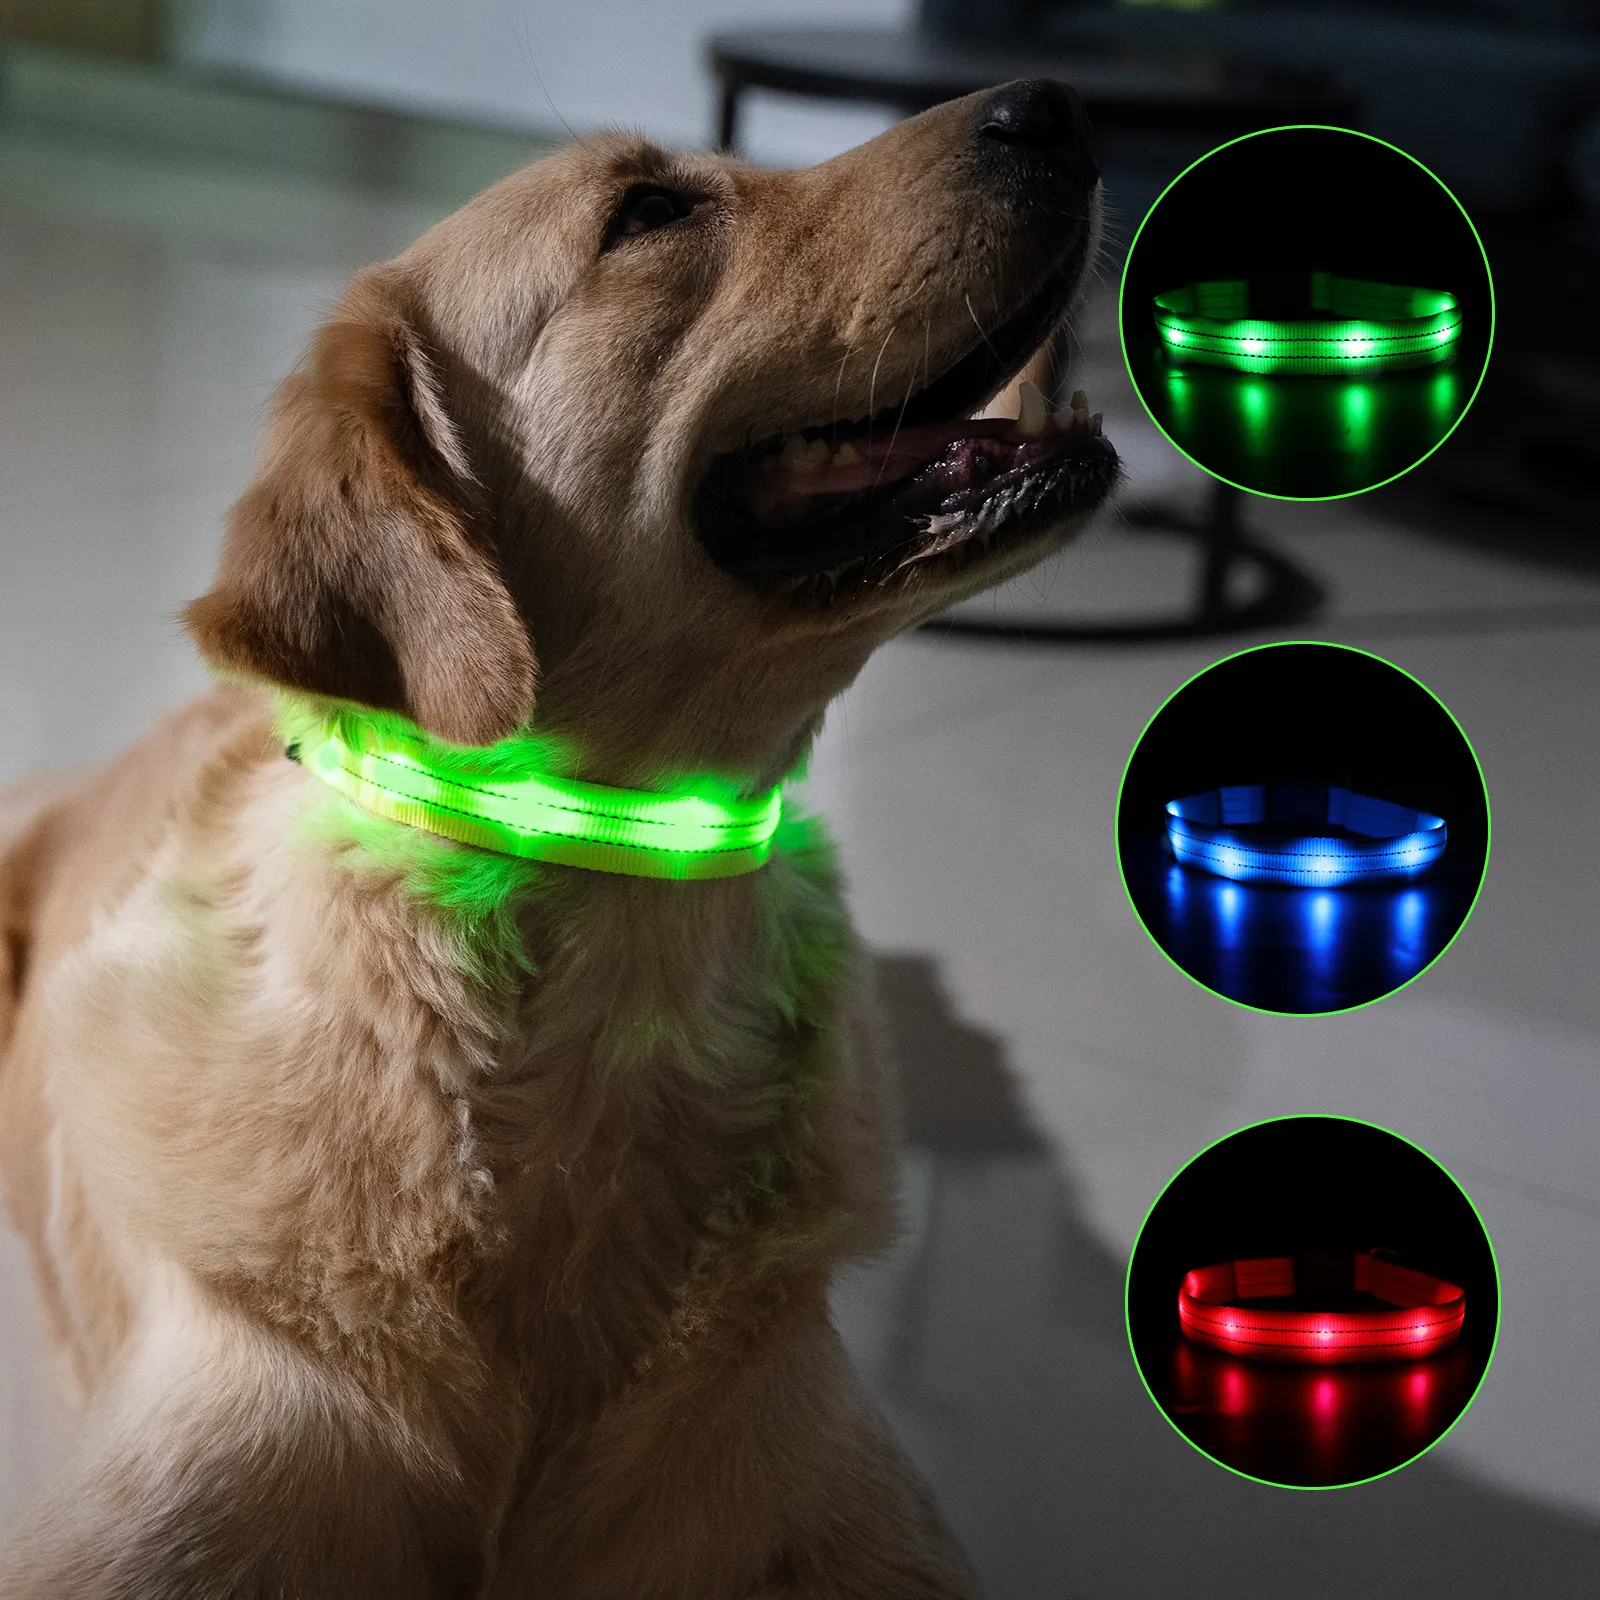 Collar de seguridad nocturna para perro, resistente al agua, recargable por USB, Led intermitente, de nailon